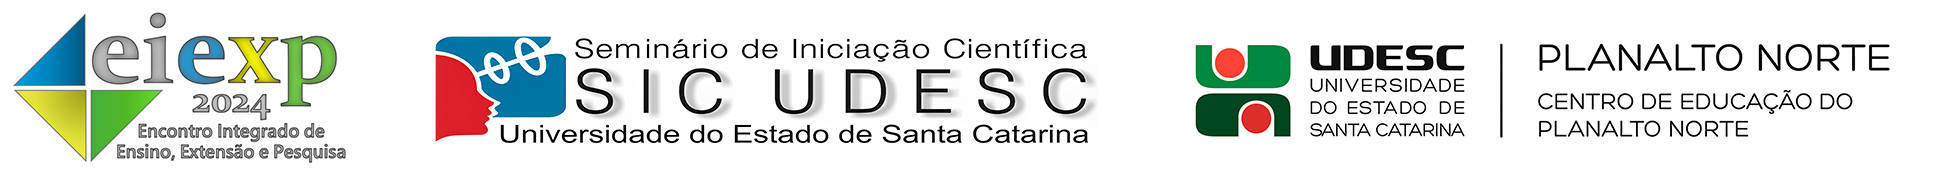 Banner EIEXP 2024, Seminário de Iniciação Científica e UDESC Planalto Norte